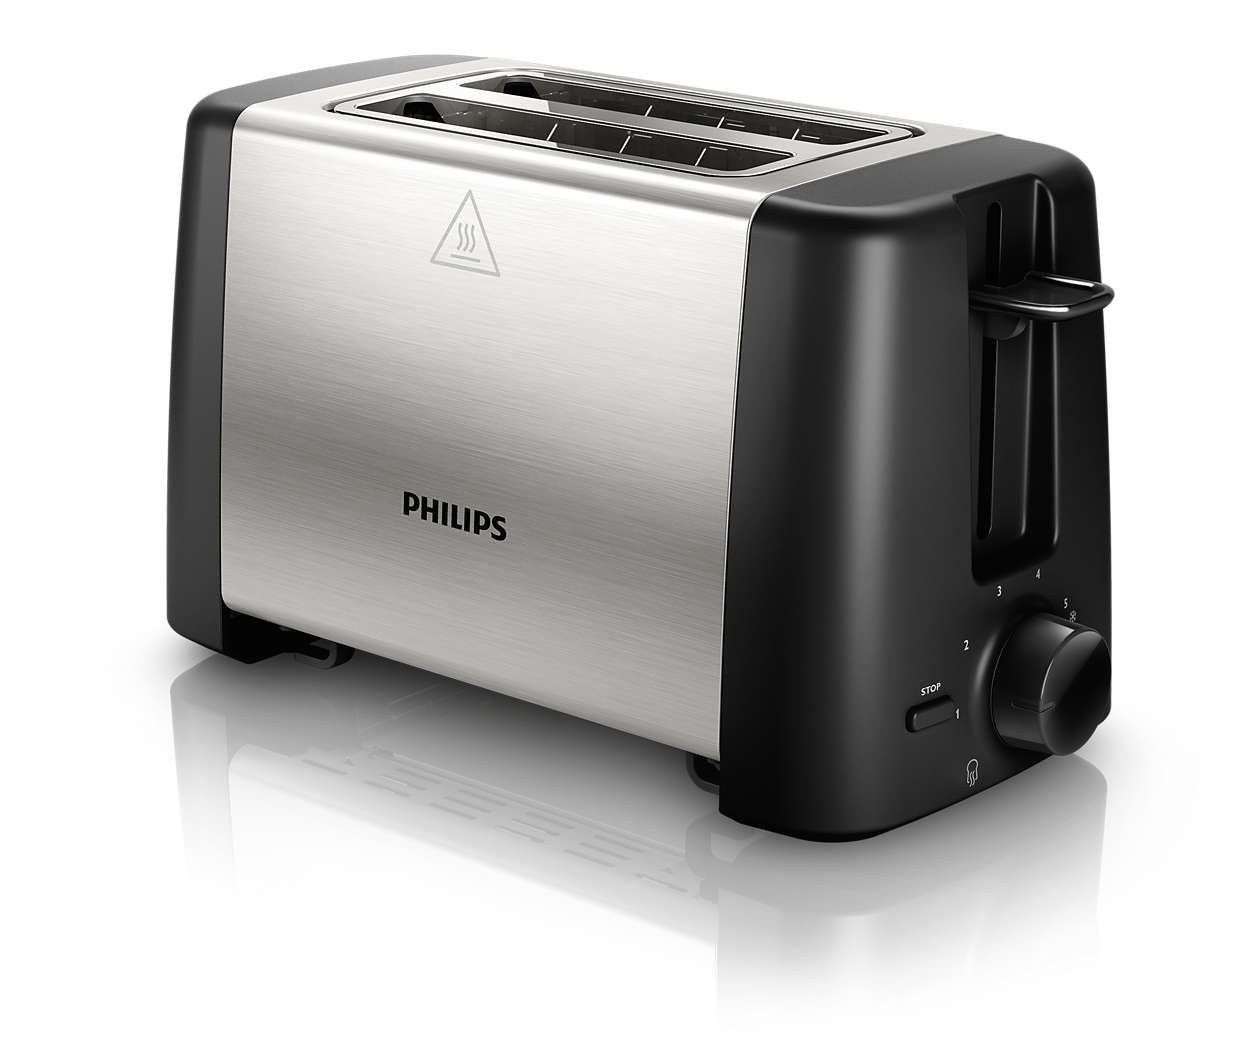 Lò nướng Philips HD4825 sở 7 chế độ nướng khác nhau cùng công suất lên tới 800W